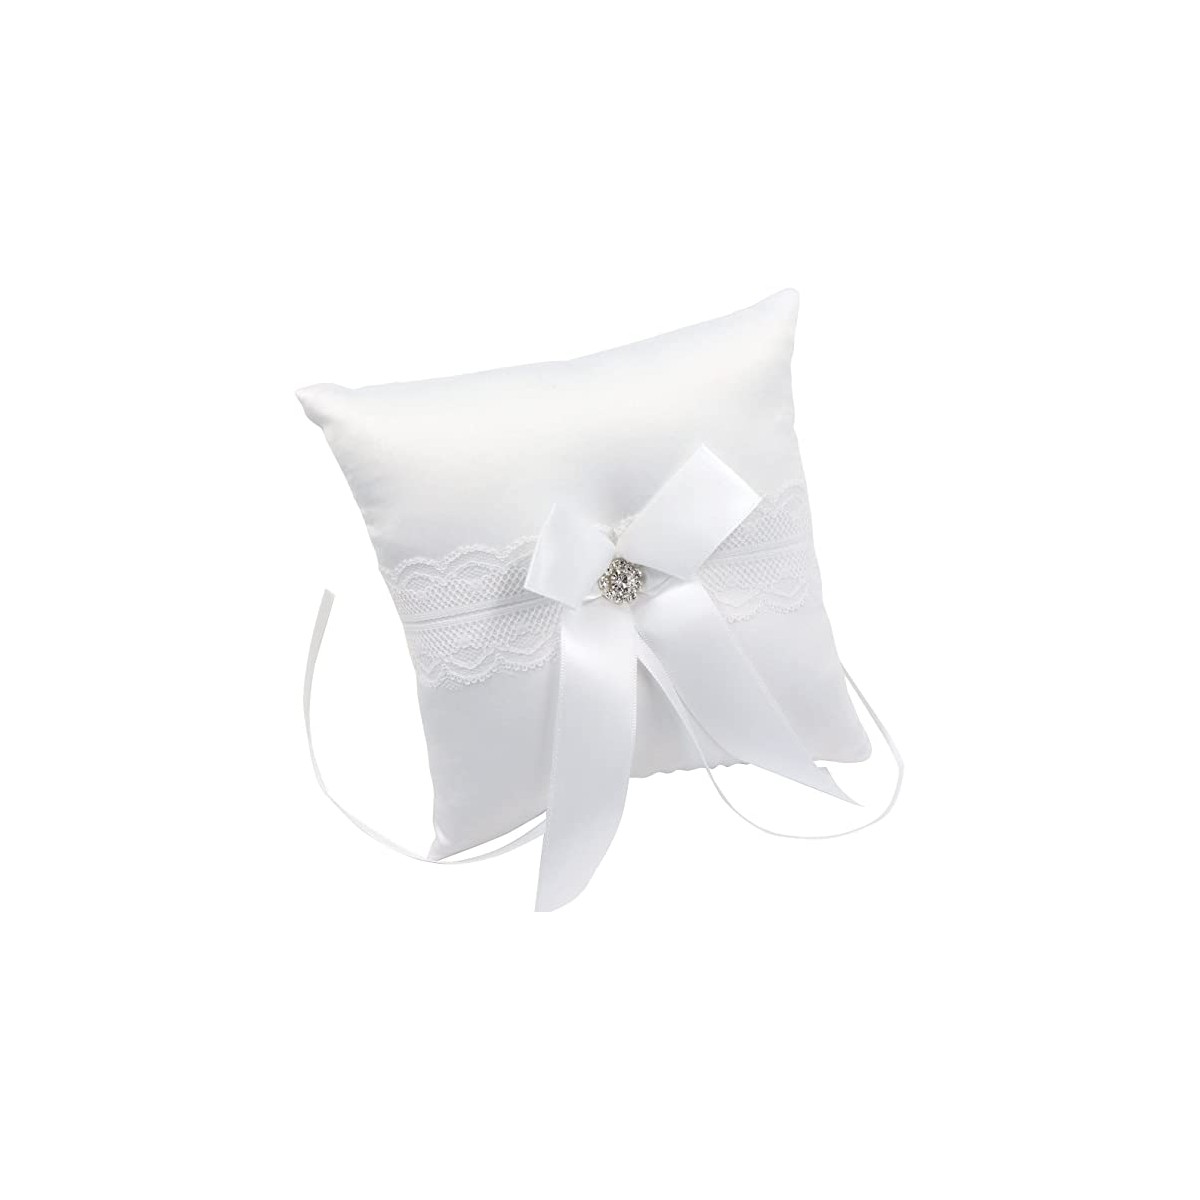 Cuscino porta fedi bianco con fiore e strass, accessorio matrimonio